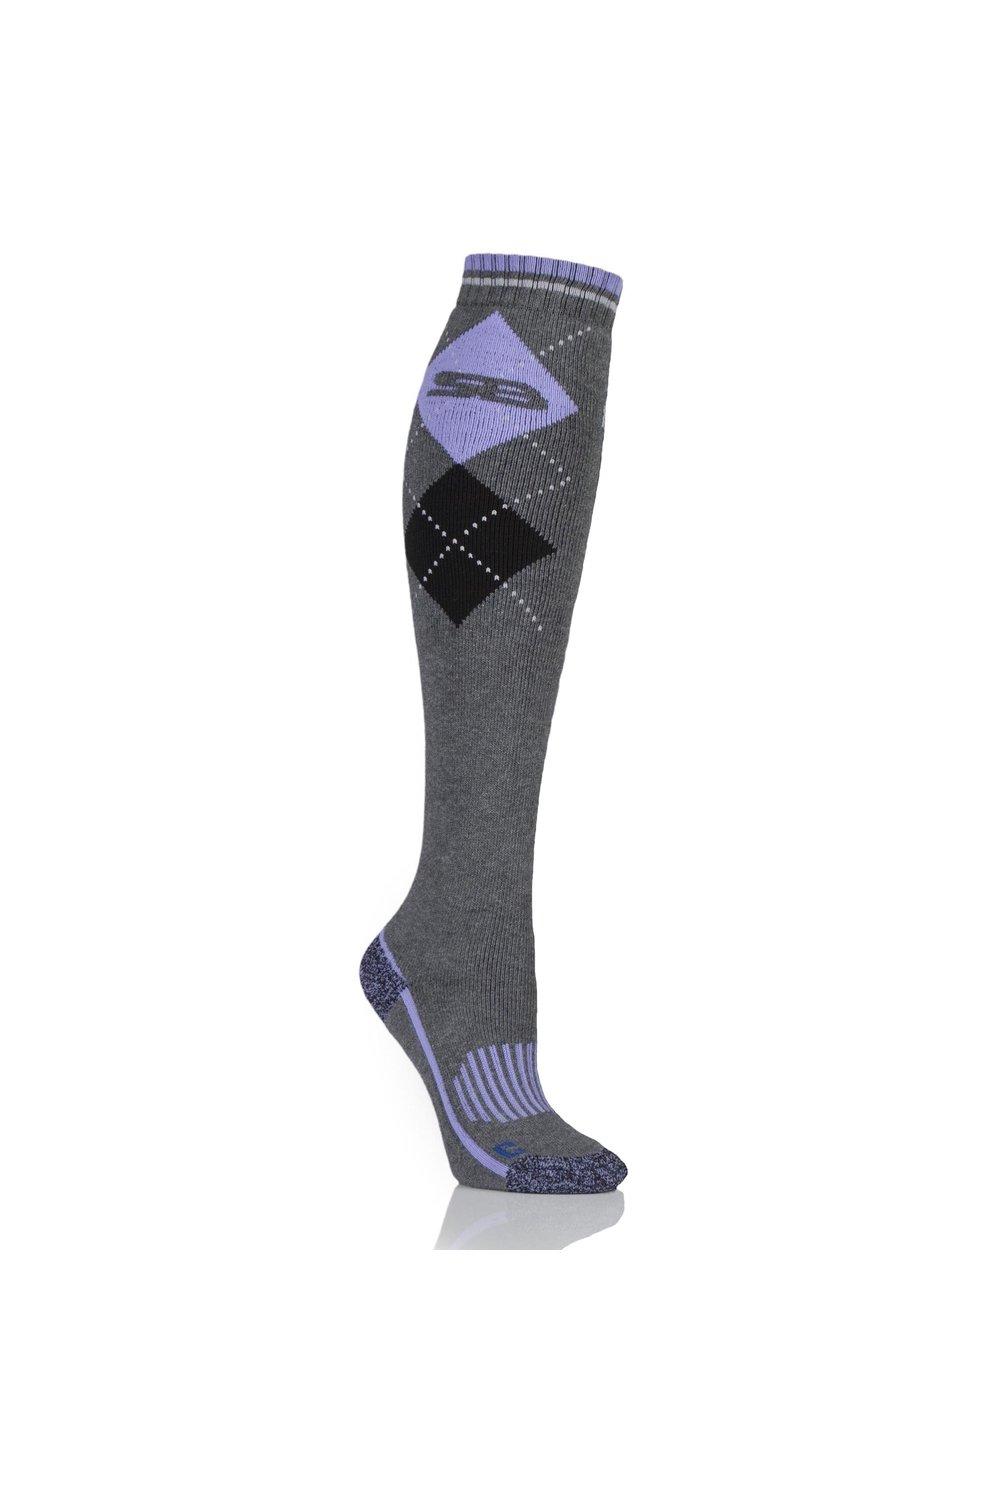 1 пара длинных хлопковых носков BlueGuard для верховой езды SOCKSHOP Storm Bloc, серый